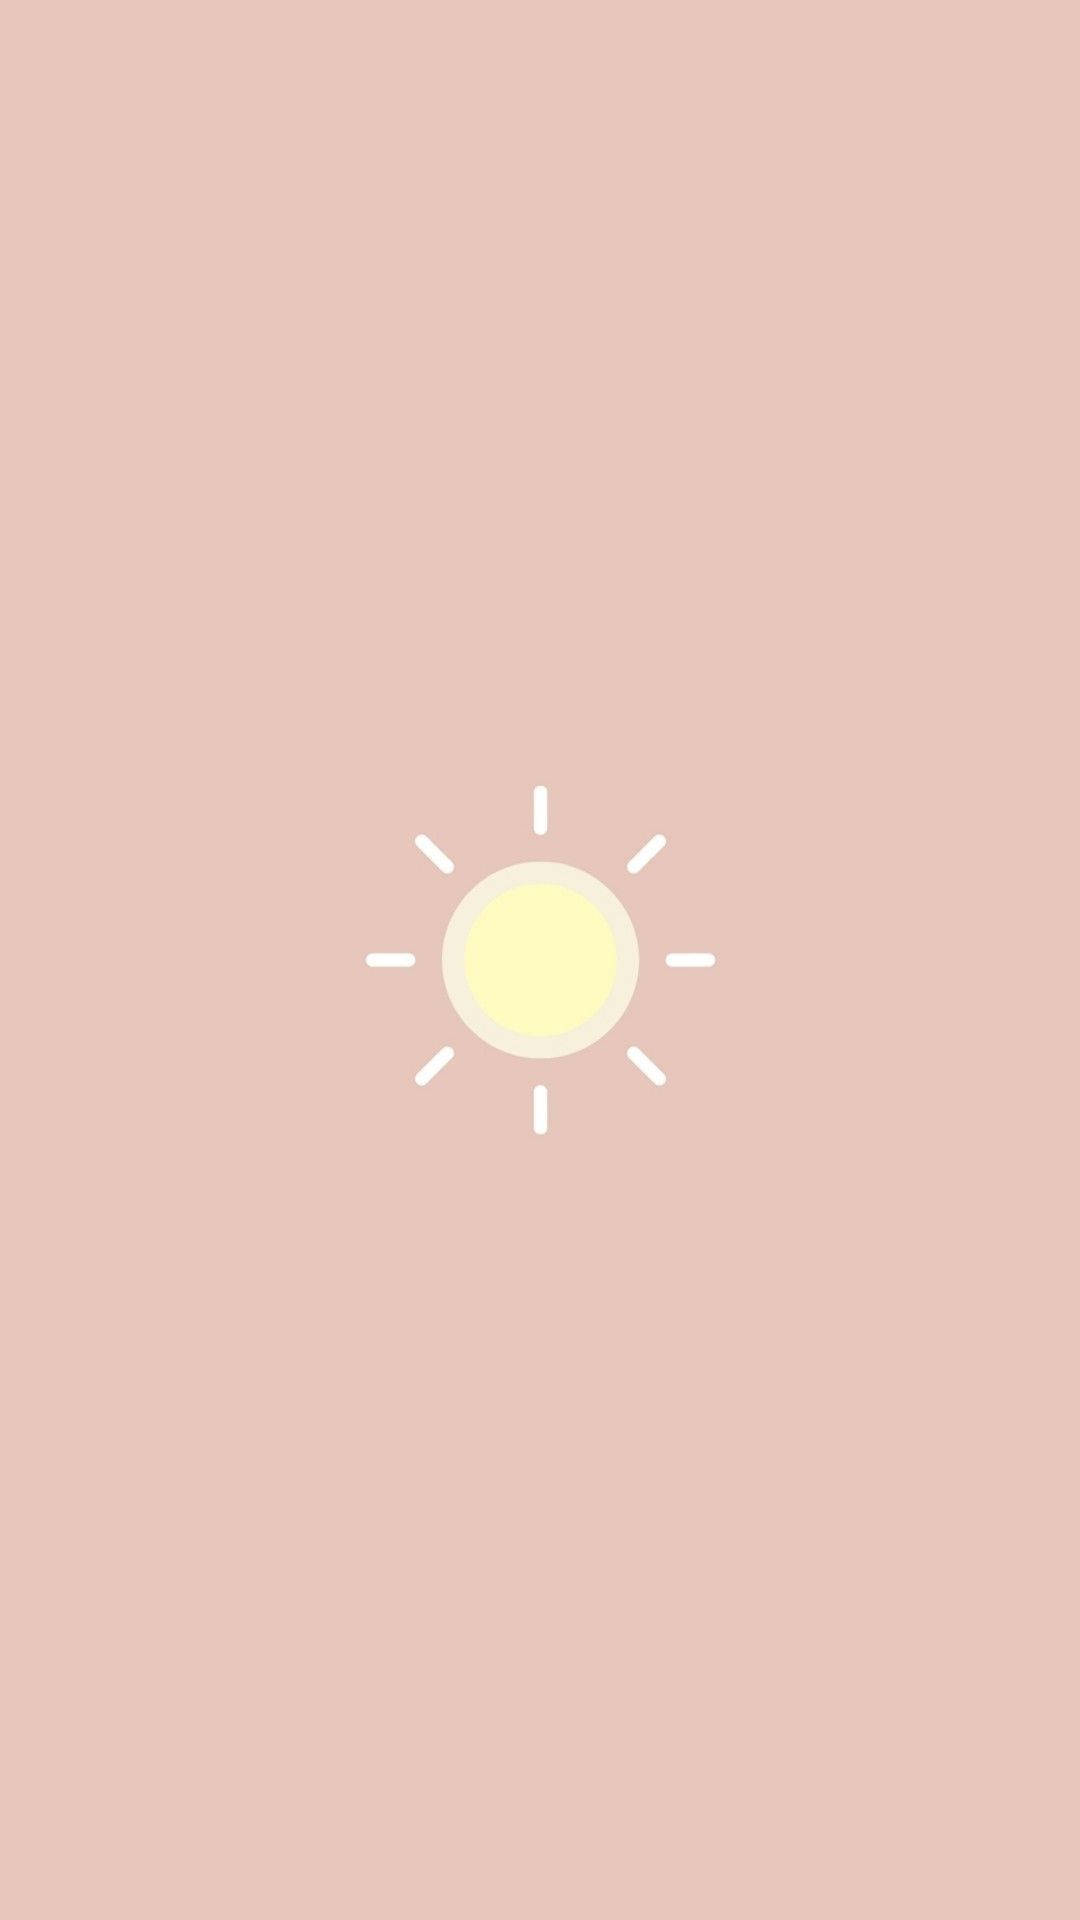 Cute Simple Sun Wallpaper